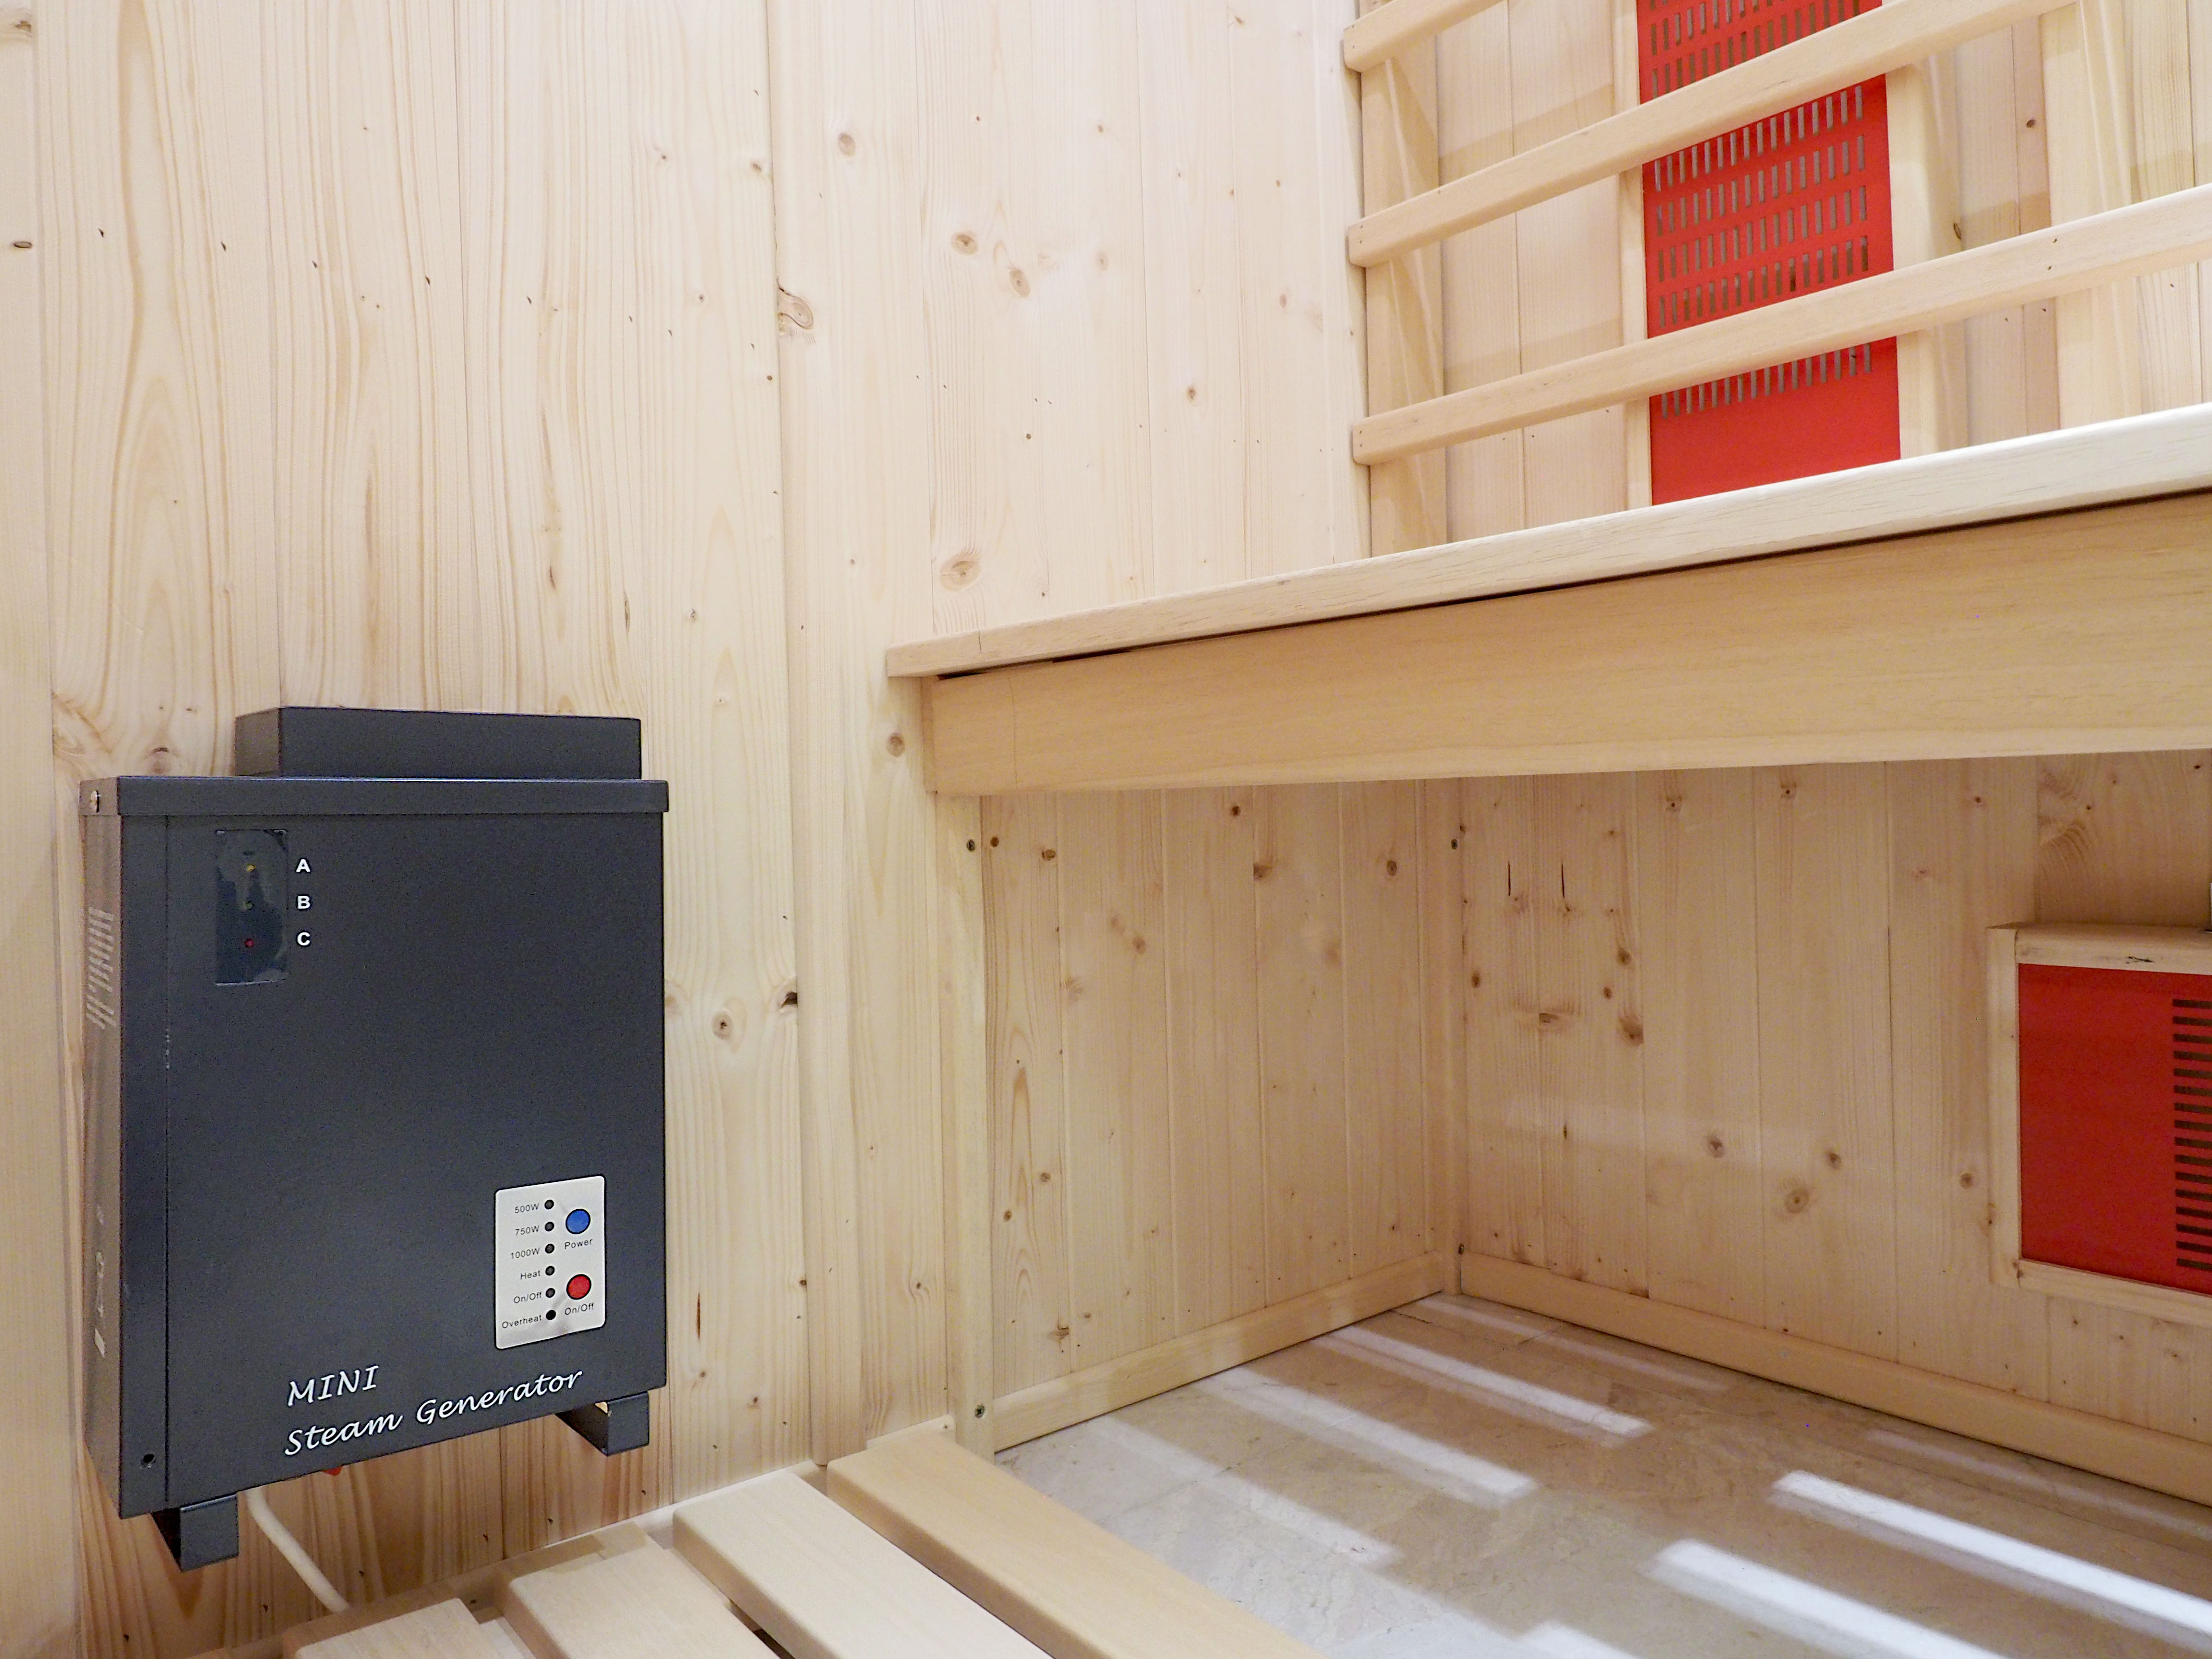 Generador de vapor para combinar la sauna con el vapor